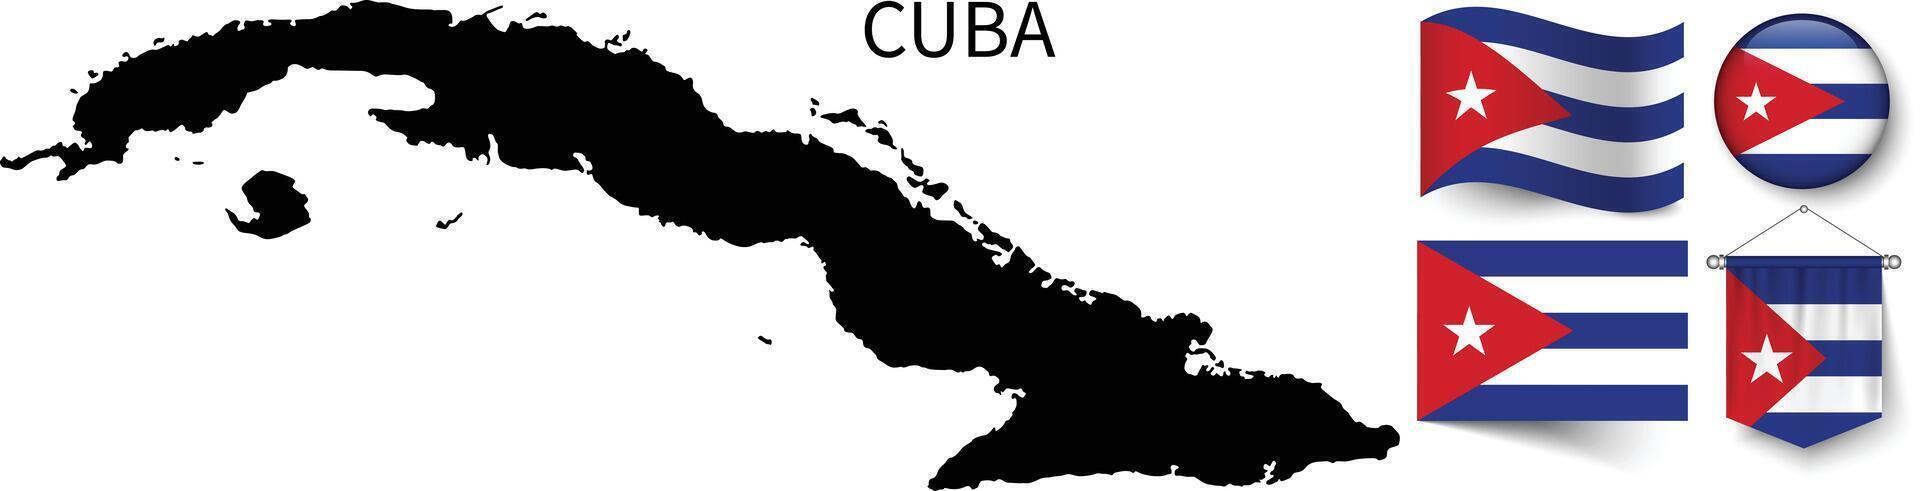 el varios patrones de el Cuba nacional banderas y el mapa de el Cuba fronteras vector